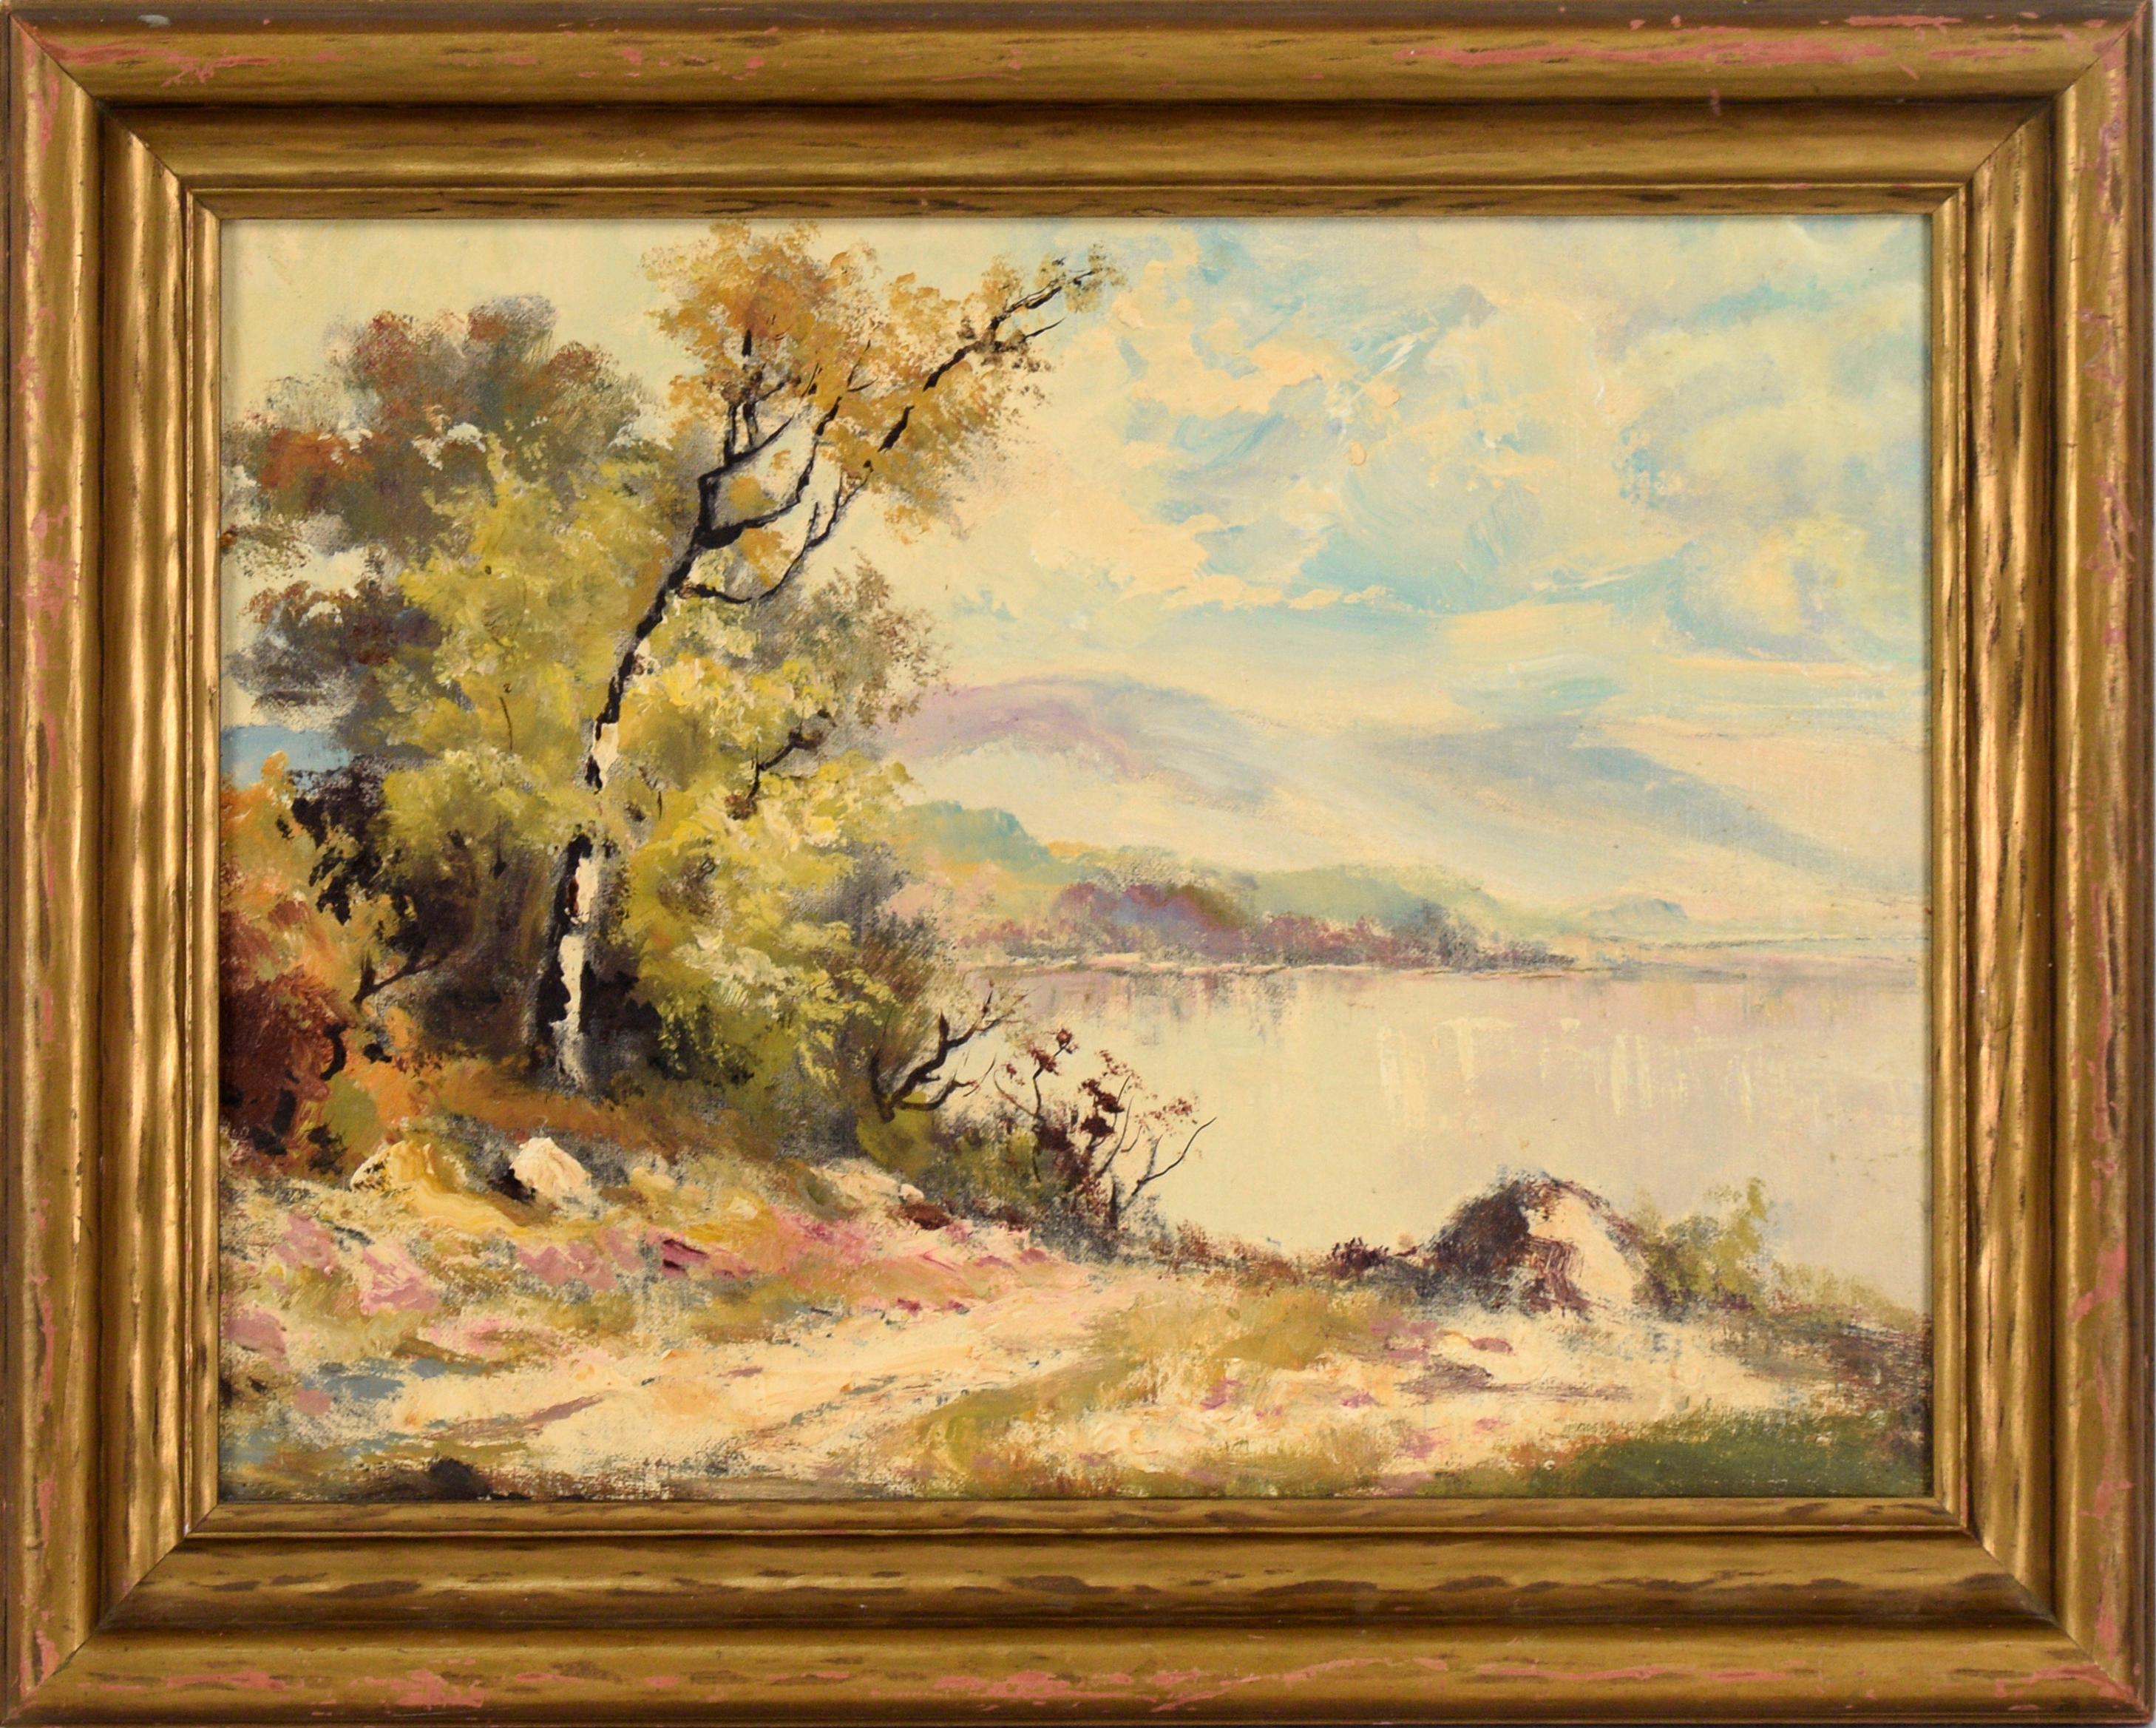 T C Duncan Landscape Painting - "The River Path" - Landscape by TC Duncan